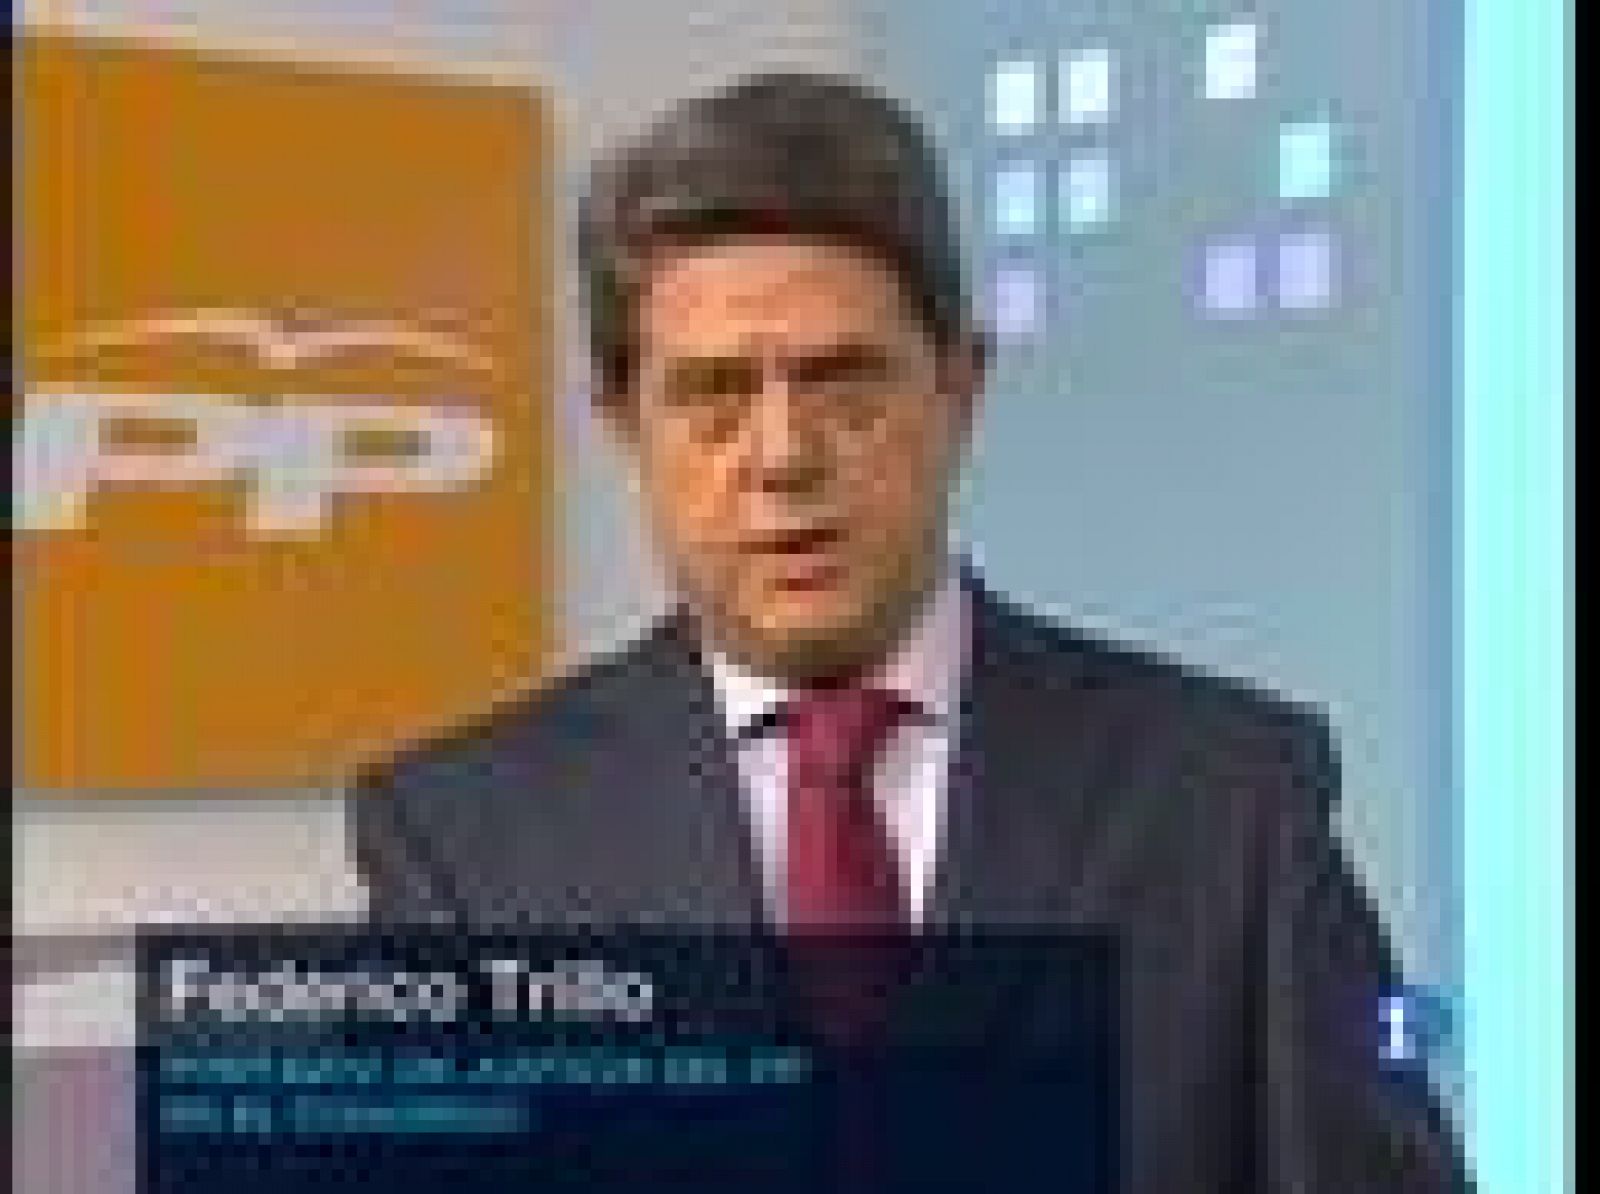 Lo ha dicho Federico Trillo en los Desayunos de TVE. Trillo y el portavoz socialista, José Antonio Alonso han coincidio en valorar la predisposición al diálogo del nuevo ministro.